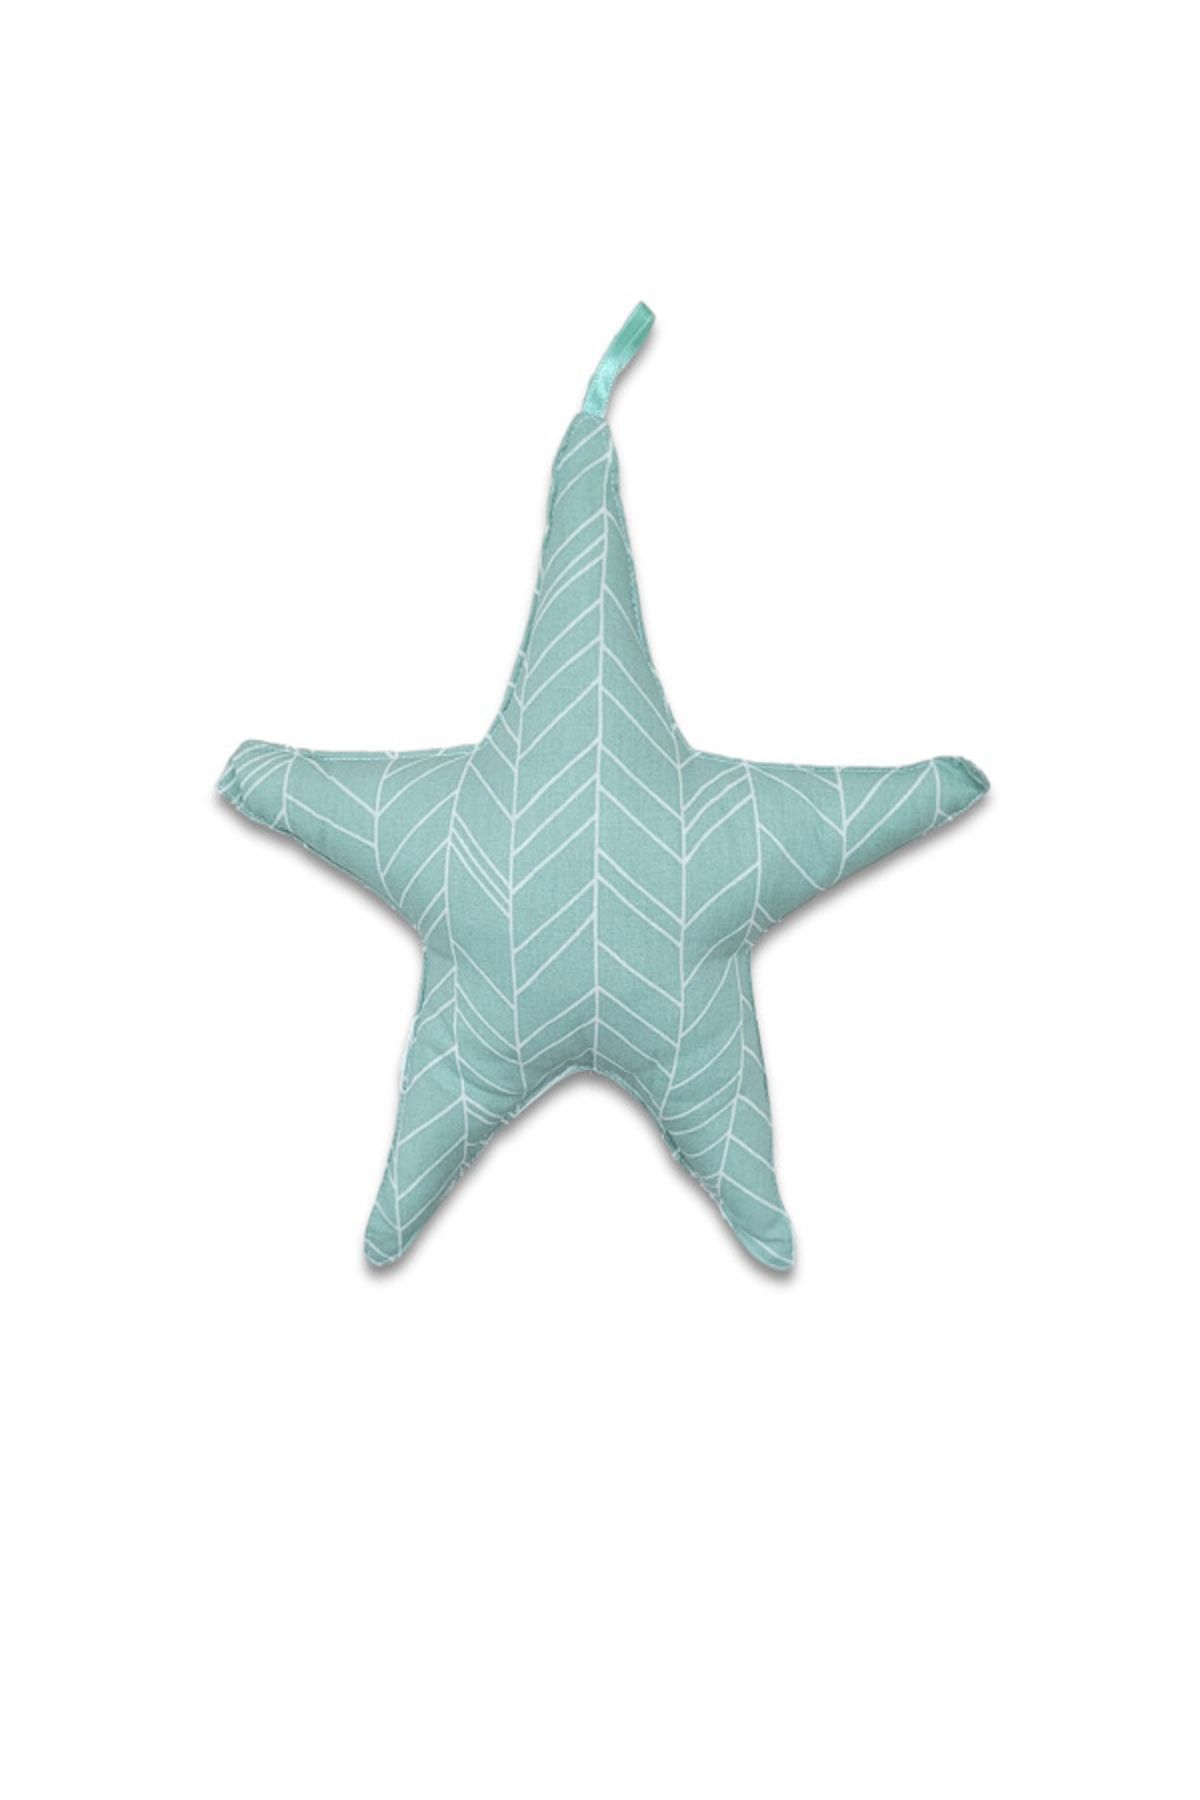 Alpar Tekstil Dekoratif Yıldız Bebek/çocuk Odası Yastığı - Çizgili Mint